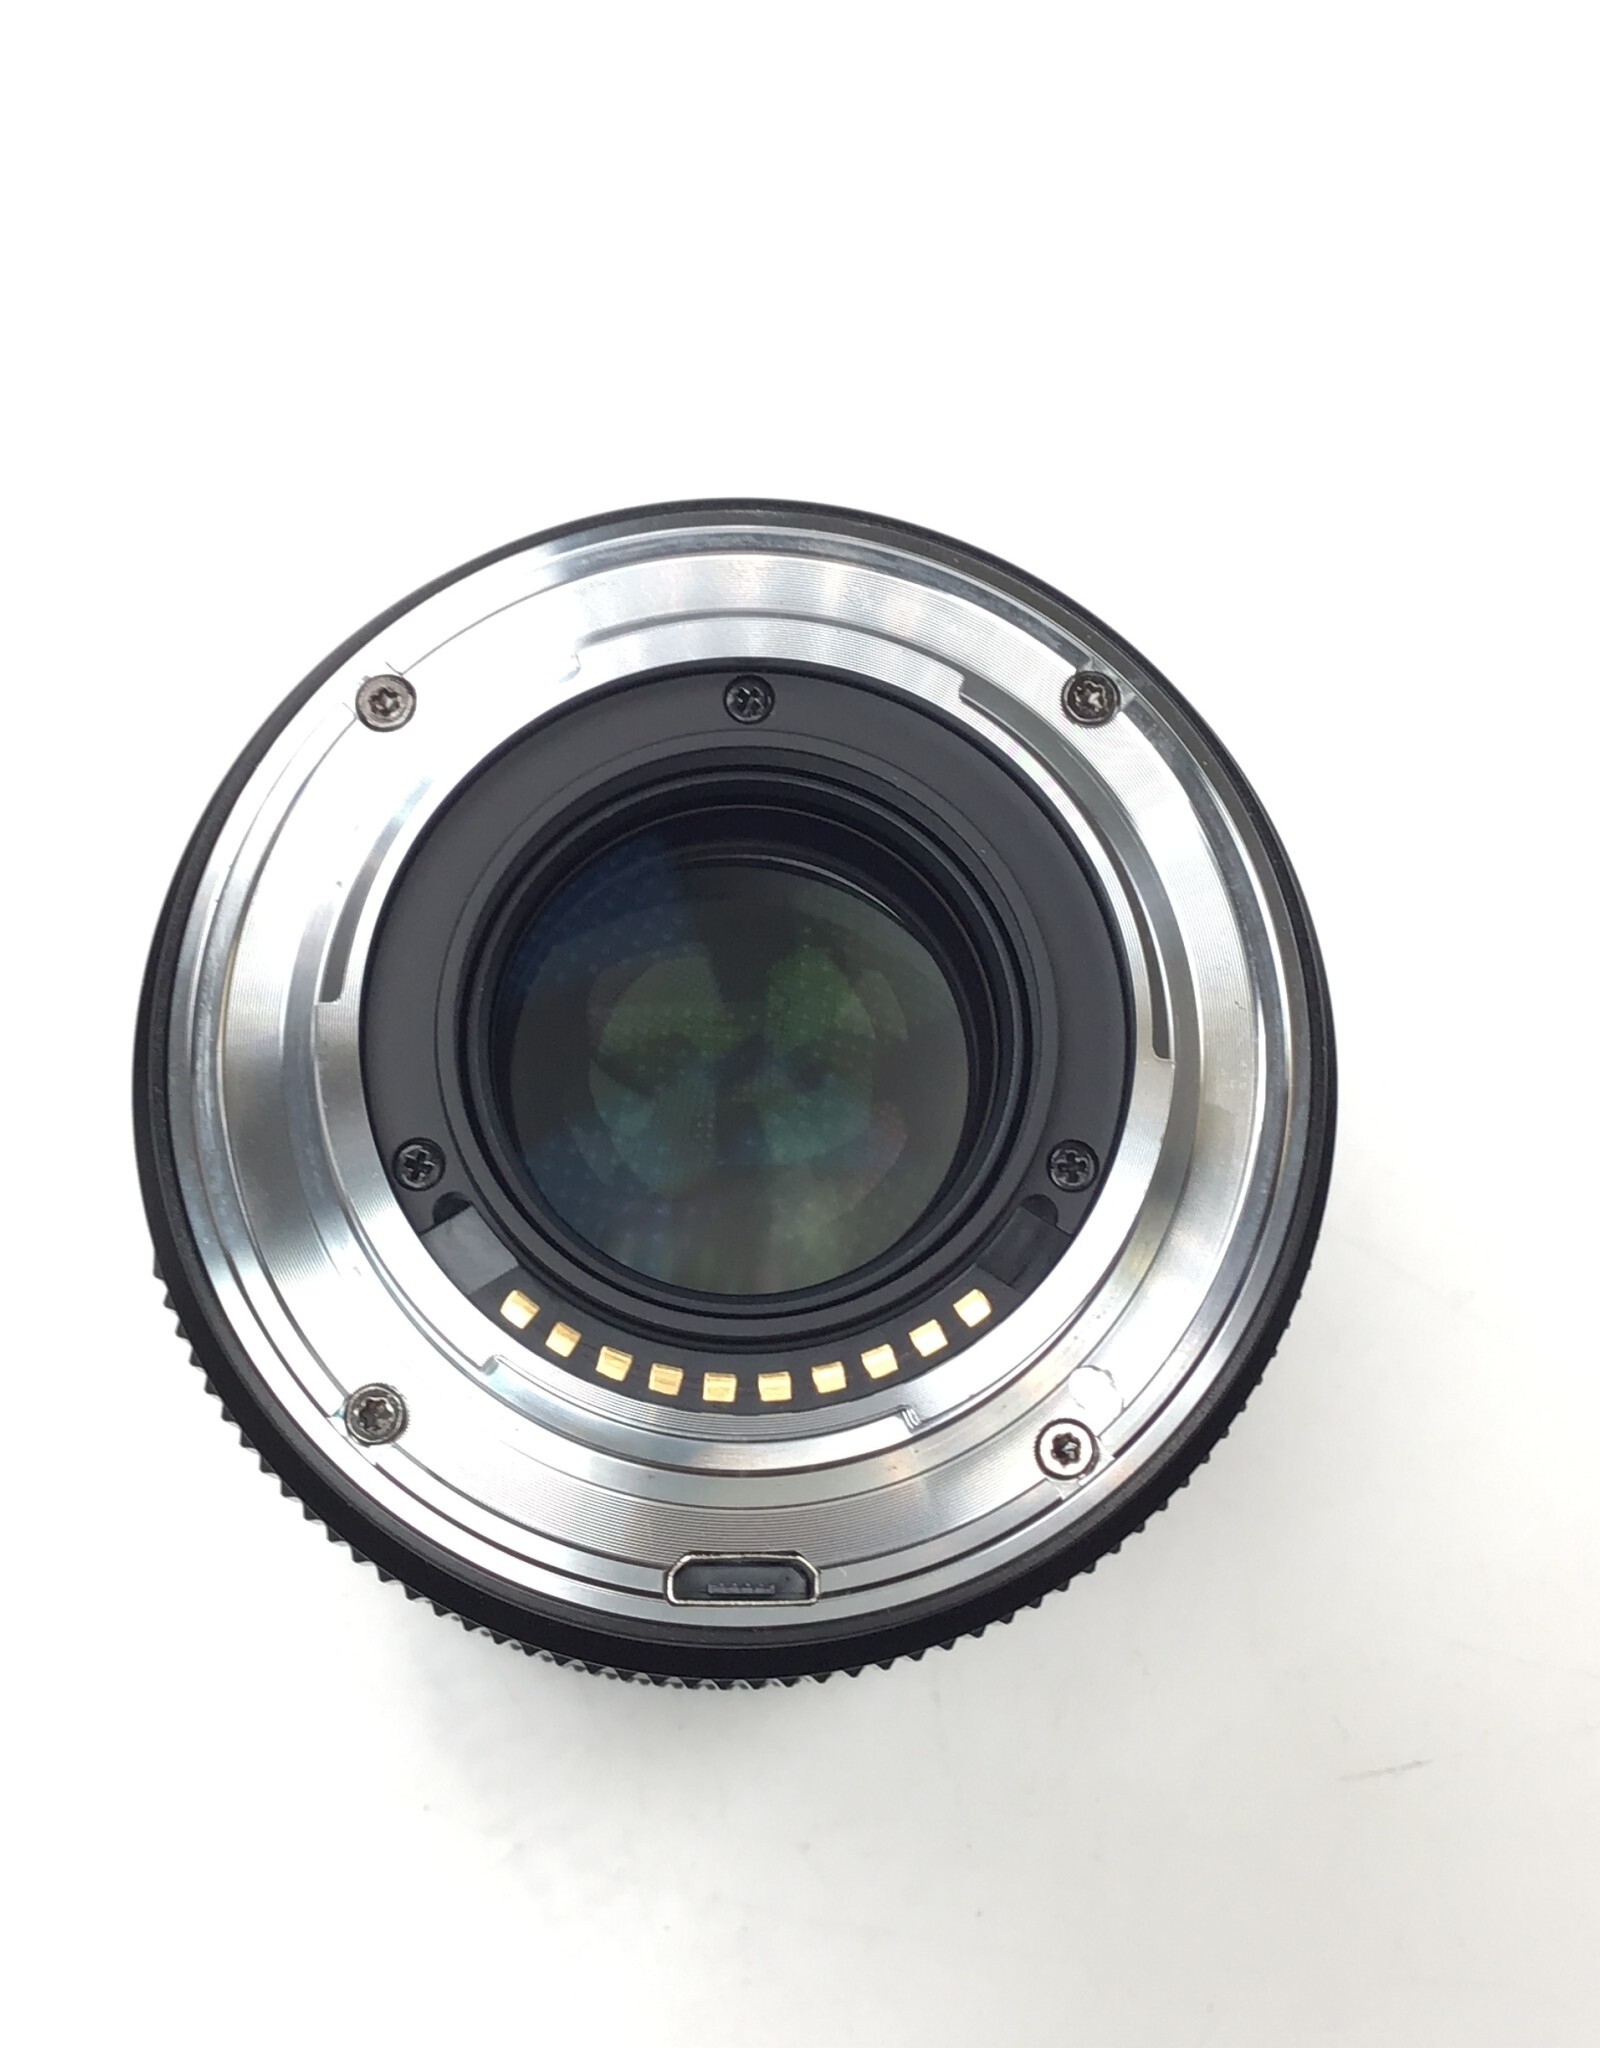 FUJI Viltrox APS-C AF 56mm f1.4 STM Lens in Box for Fuji X Used EX